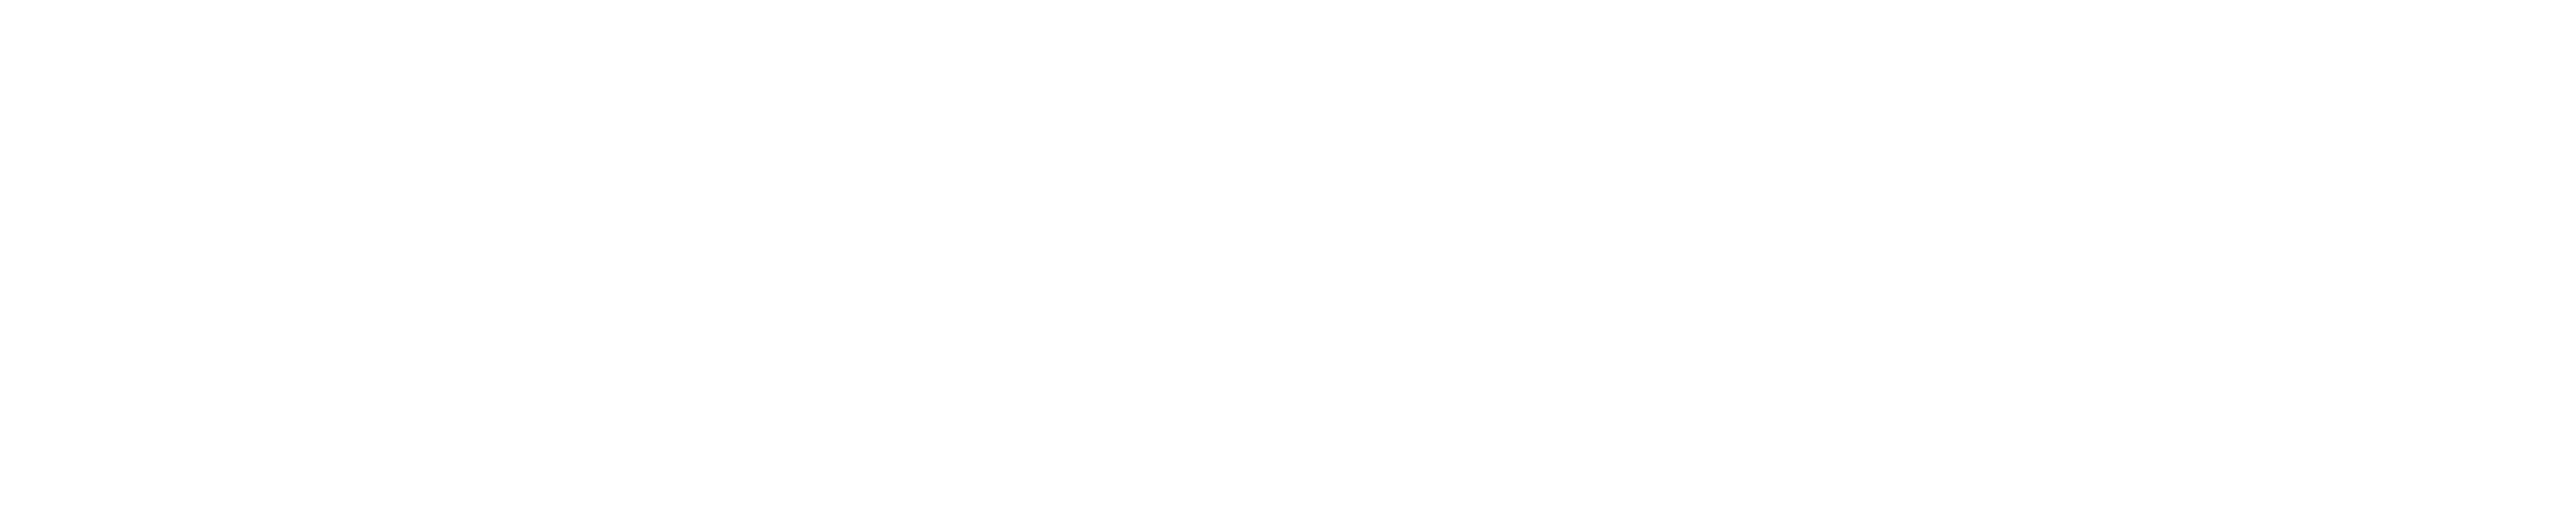 The Good, the Bad, the Weird logo